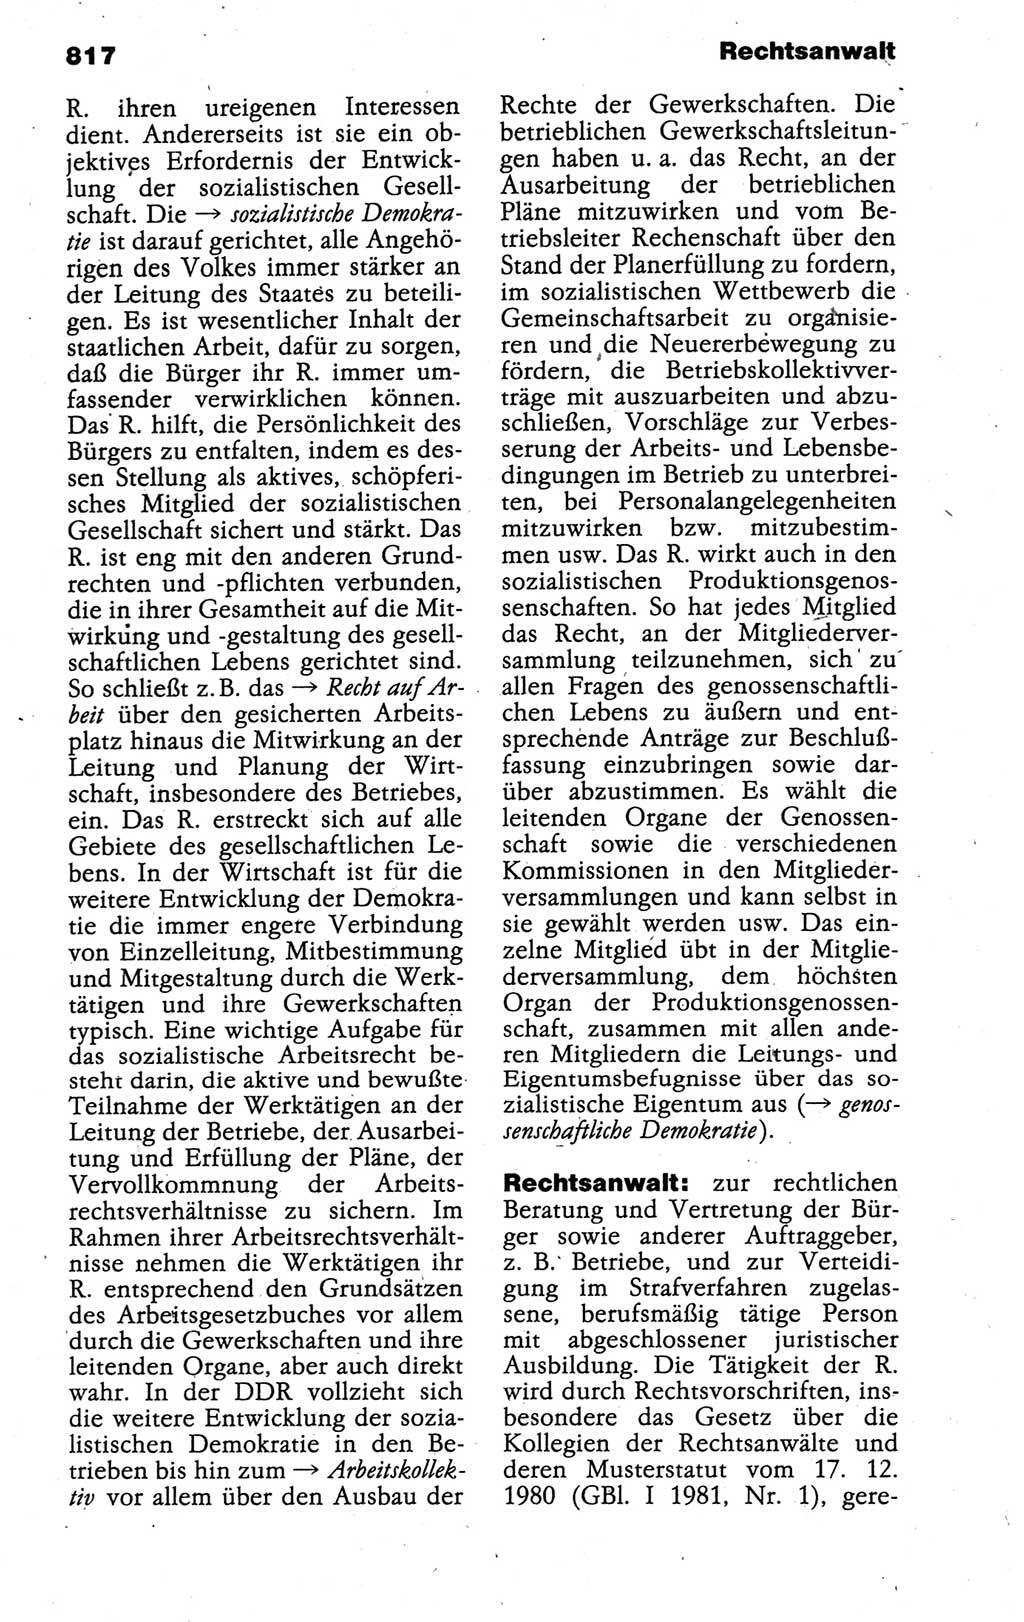 Kleines politisches Wörterbuch [Deutsche Demokratische Republik (DDR)] 1988, Seite 817 (Kl. pol. Wb. DDR 1988, S. 817)